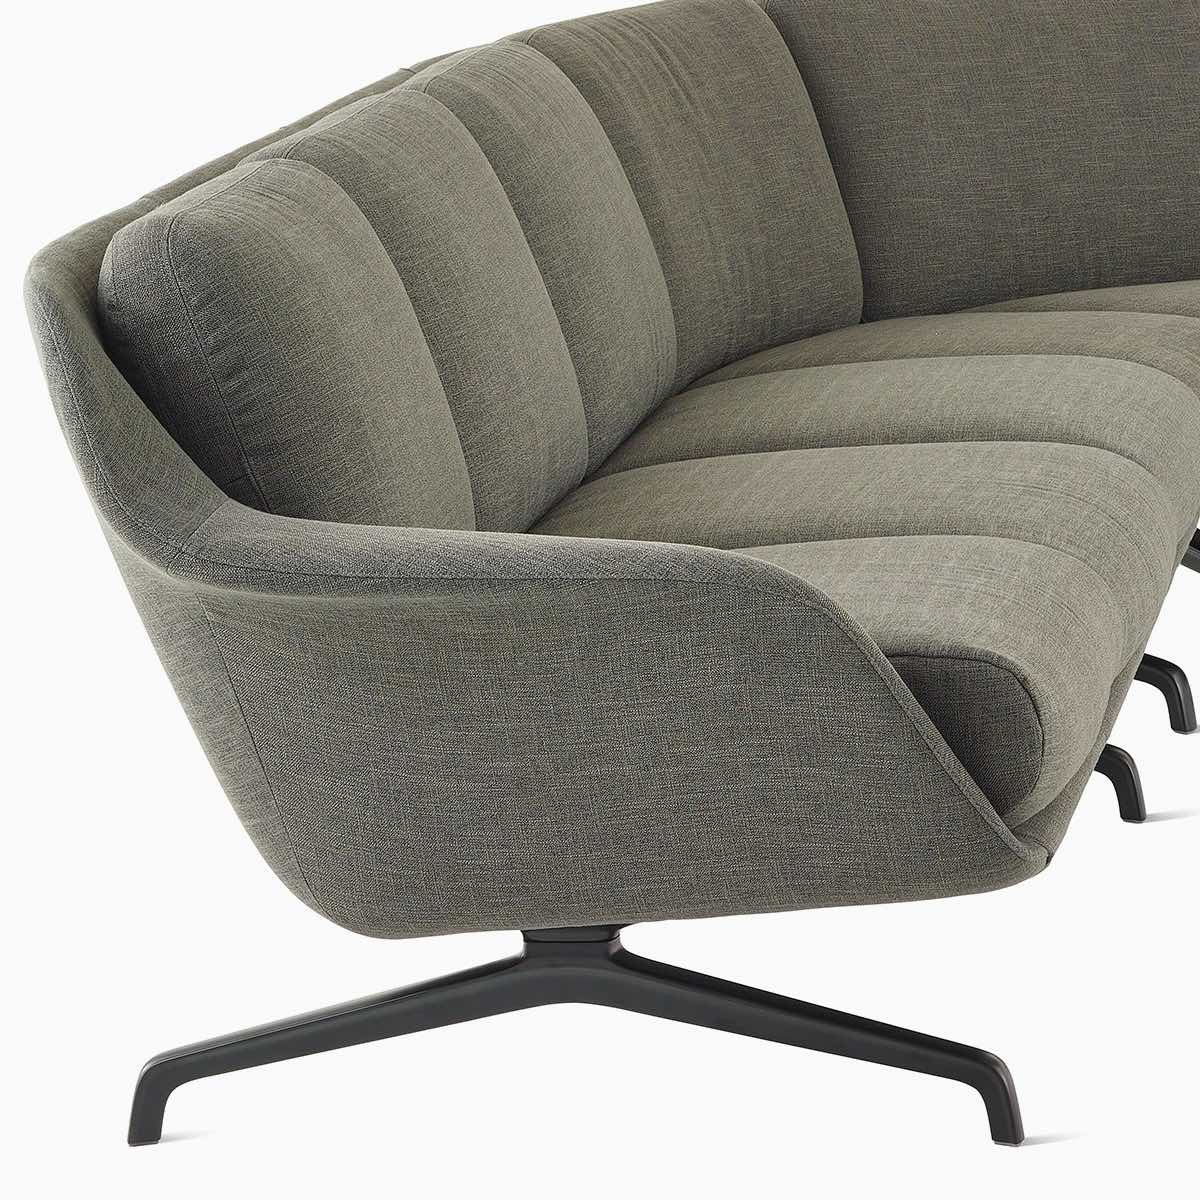 Un divano Striad a tre posti con schienale basso con curva interna in una configurazione componibile color grigio scuro.